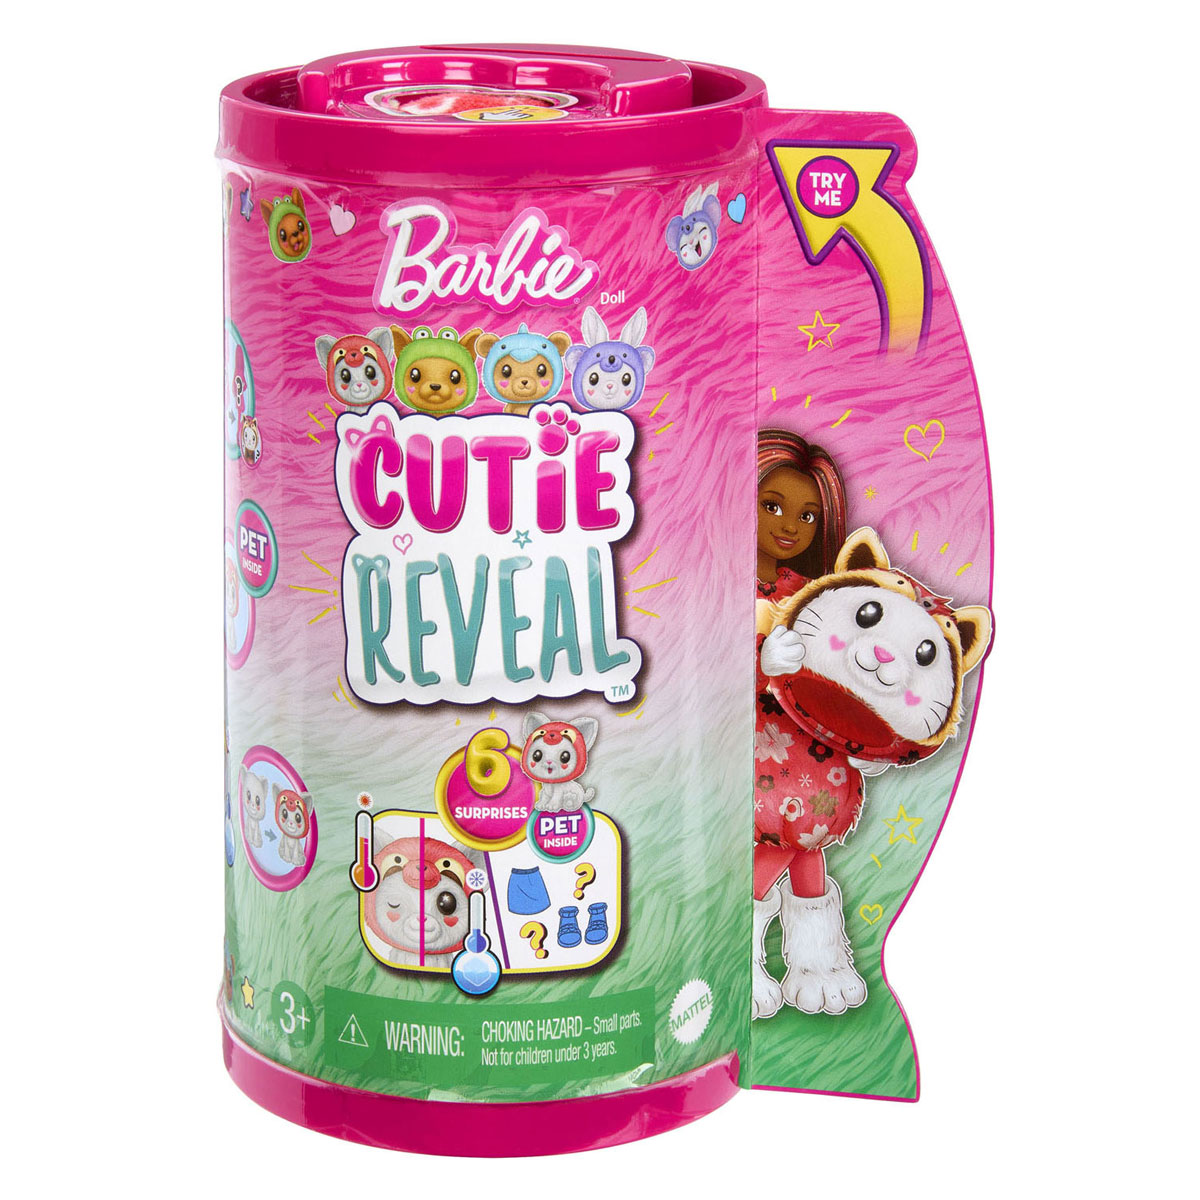 Barbie Chelsea Reveal Modepop - Red Panda